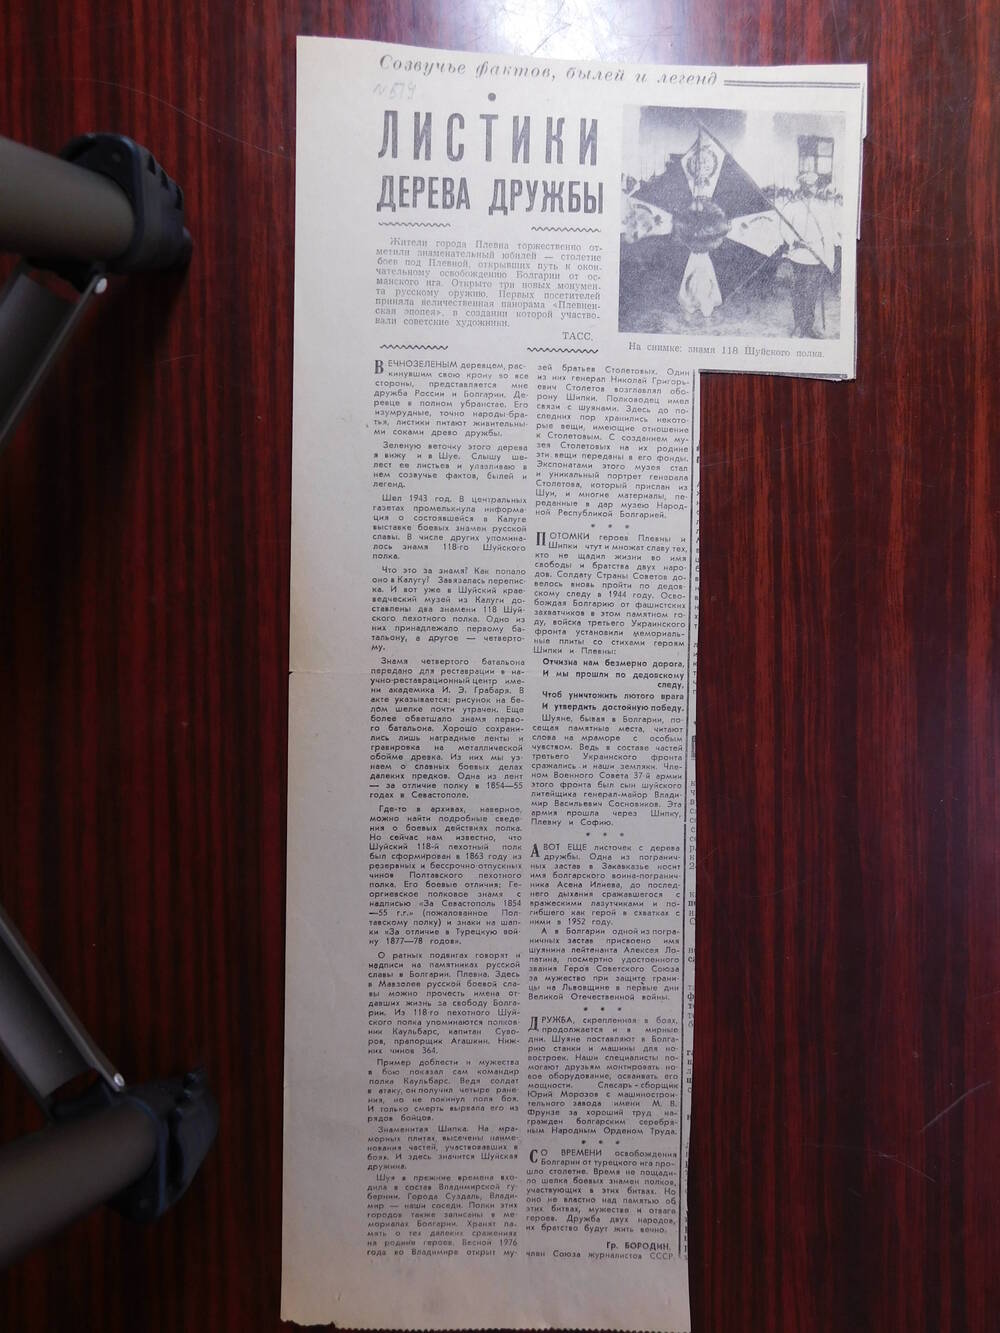 Фрагмент газеты Знамя коммунизма от 27.12.1977 г. Ст. Гр. Бородин. Листки дерева дружбы. Шуя.